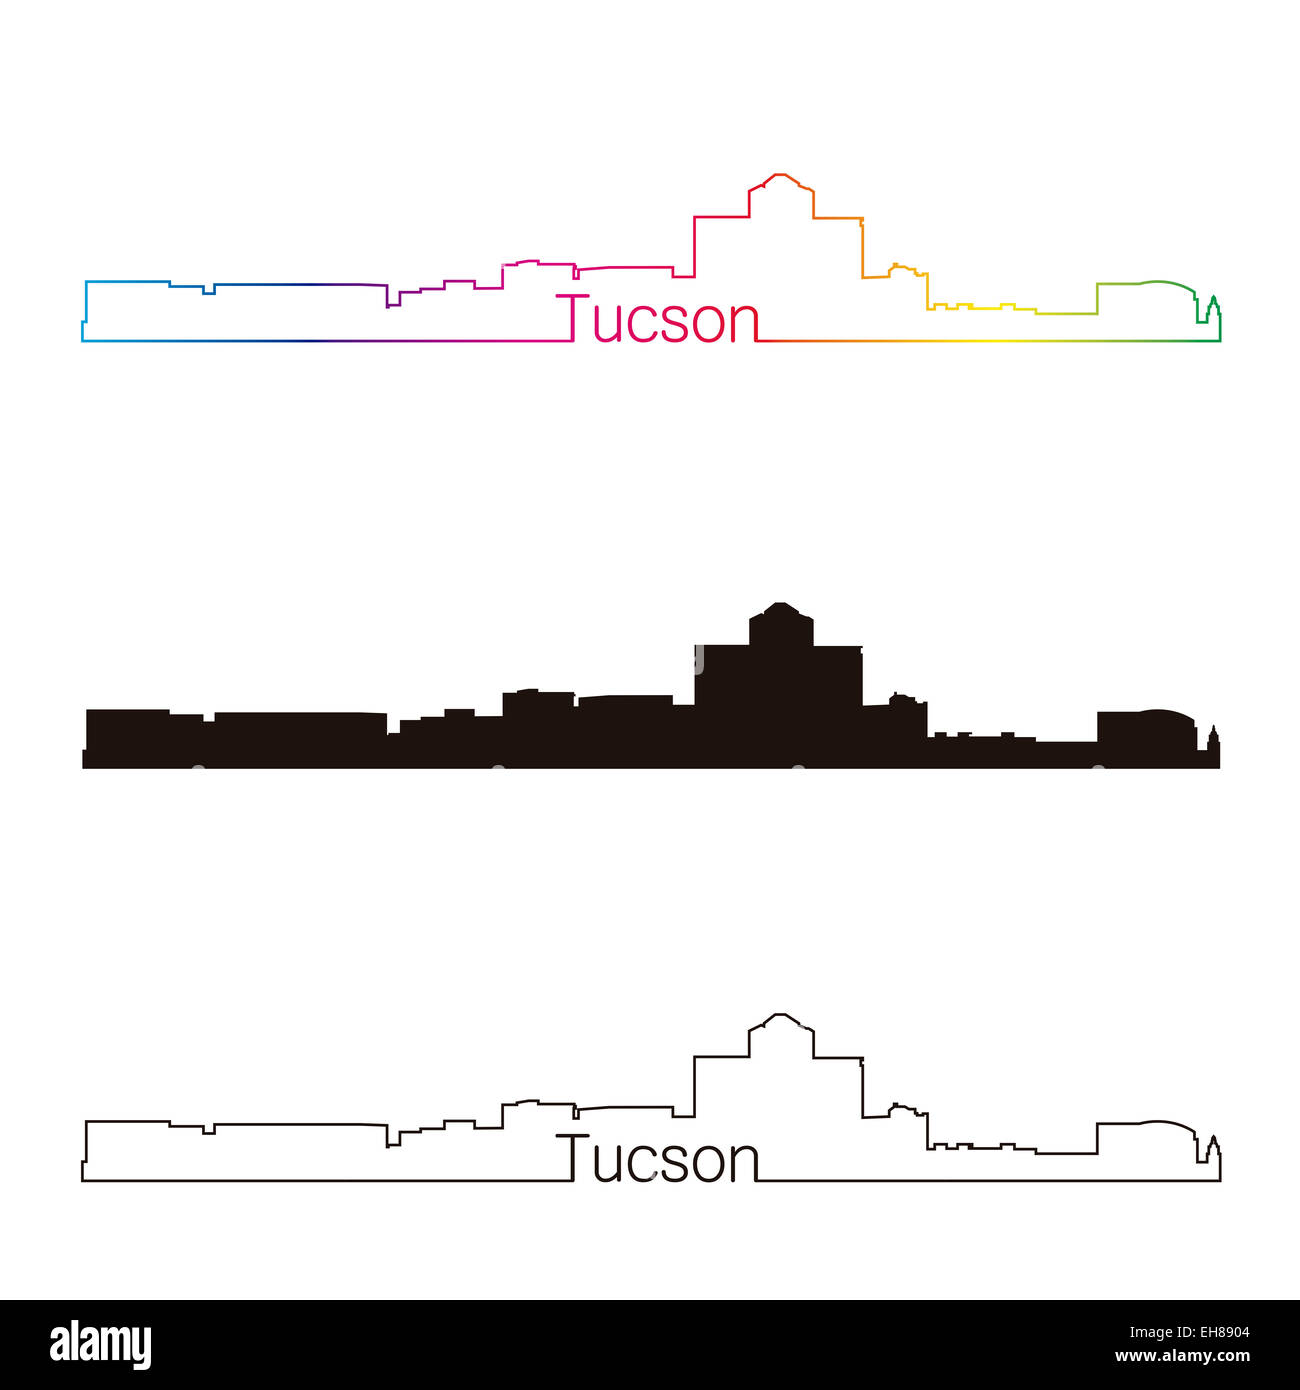 Tucson skyline linear style with rainbow Stock Photo